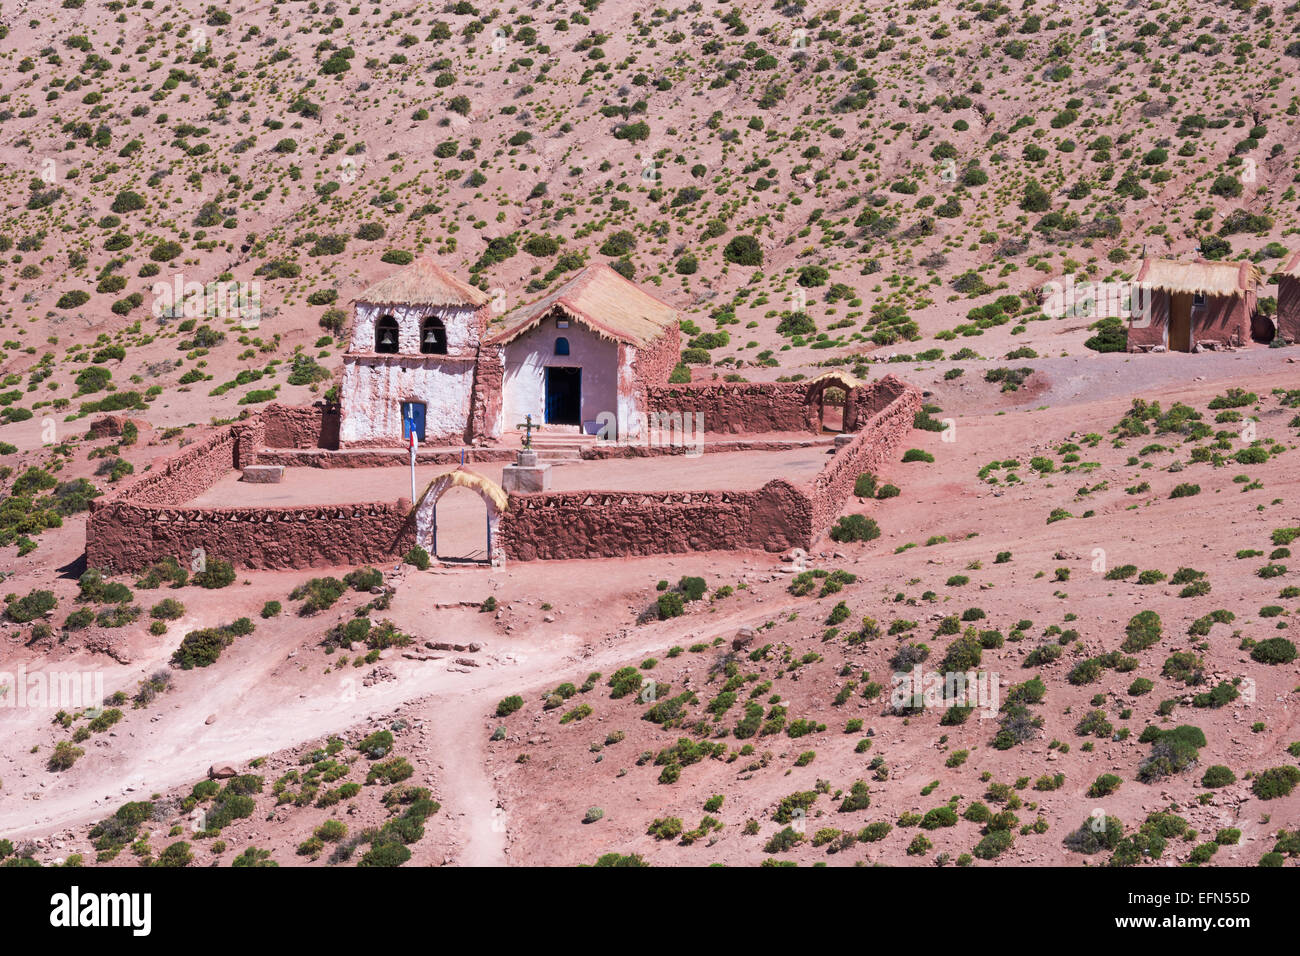 MACHUCA Dorfkirche in winzigen Lama hüten, Gemeinschaft, kleine Highland Village, Atacama-Wüste, San Pedro Region, Chile, Süd A Stockfoto